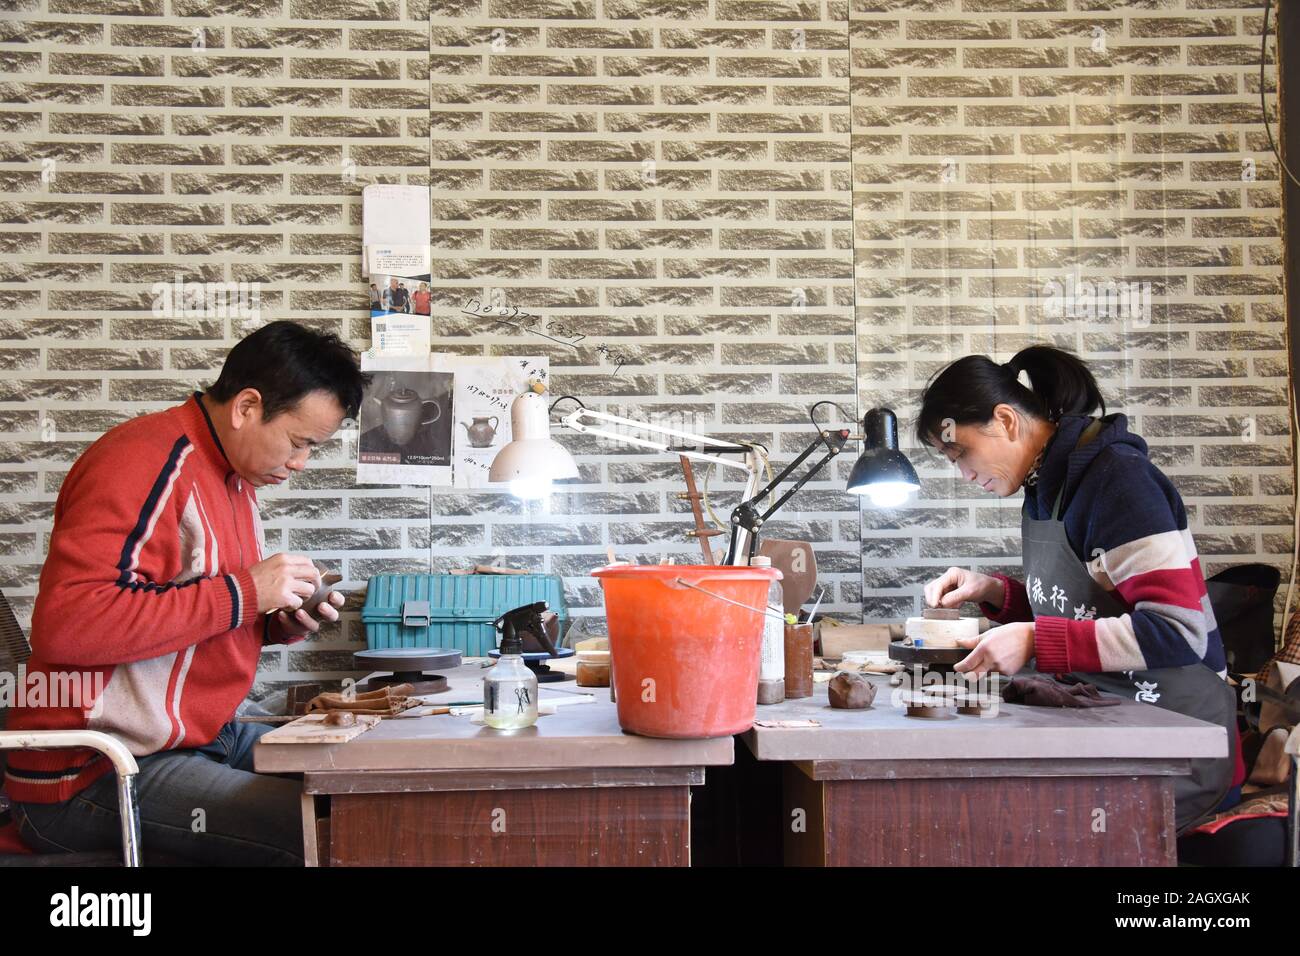 (191222) -- YIAN, 22 déc., 2019 (Xinhua) ---devenu agriculteur artistes poterie Bai Yinjie (L) et son épouse Xu Mingjuan travailler sur des articles de poterie Argile violet dans un studio à Yian Comté de la province du nord-est de la Chine, 18 décembre 2019. Bai Yinjie et son épouse Xu Mingjuan, les deux 52, sont maintenant accrédités par province des maîtres de l'art de la poterie dans la région de Yian Comté. Ils ont utilisé pour être agriculteurs conventionnels les cultures dans le domaine, n'ayant pas de compétences liées à la poterie jusqu'en 2015. Yian comté a une réserve riche de kaolin, un matériel idéal pour la production de la poterie, mais il a longtemps été utilisé pour faire de grandes conta Banque D'Images